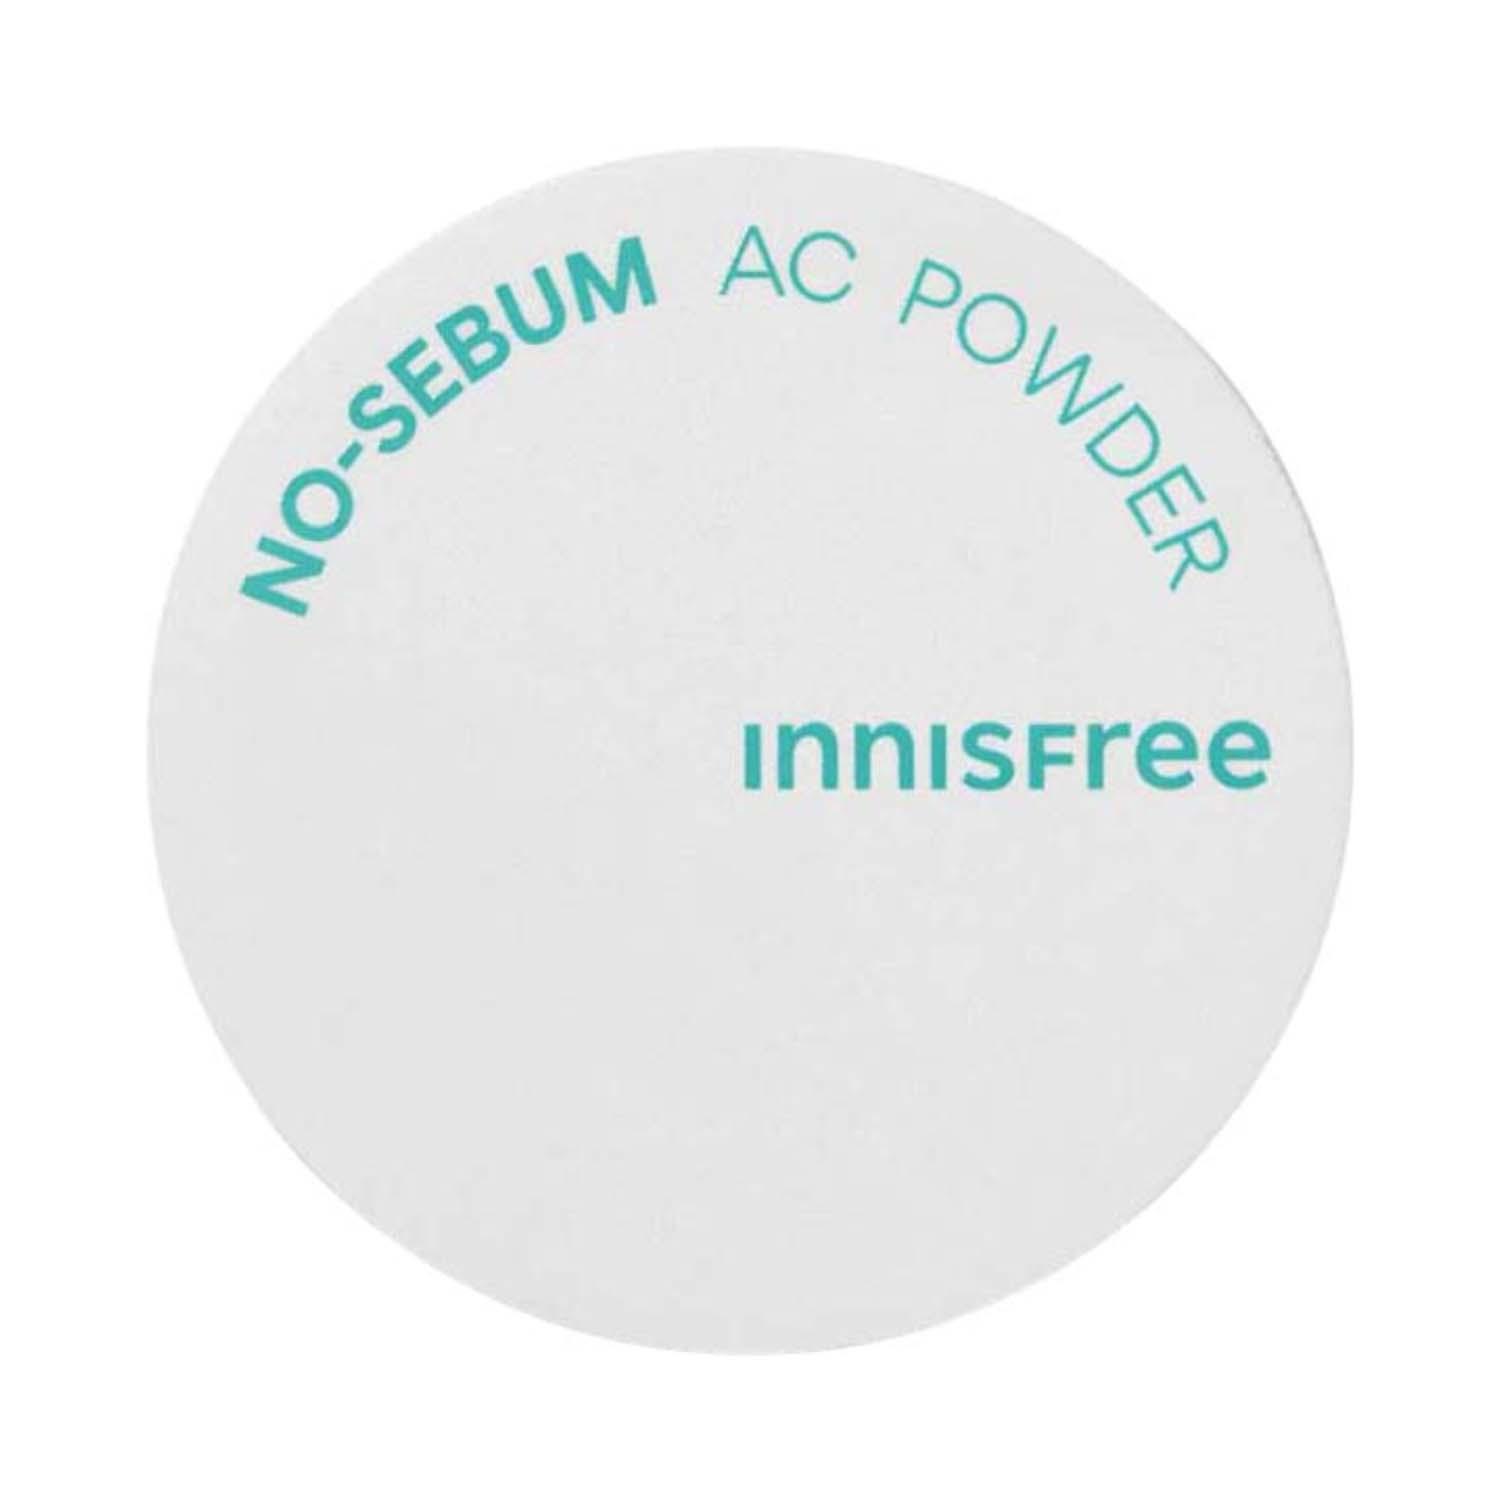 Innisfree | Innisfree No-Sebum AC Powder - White (5 g)